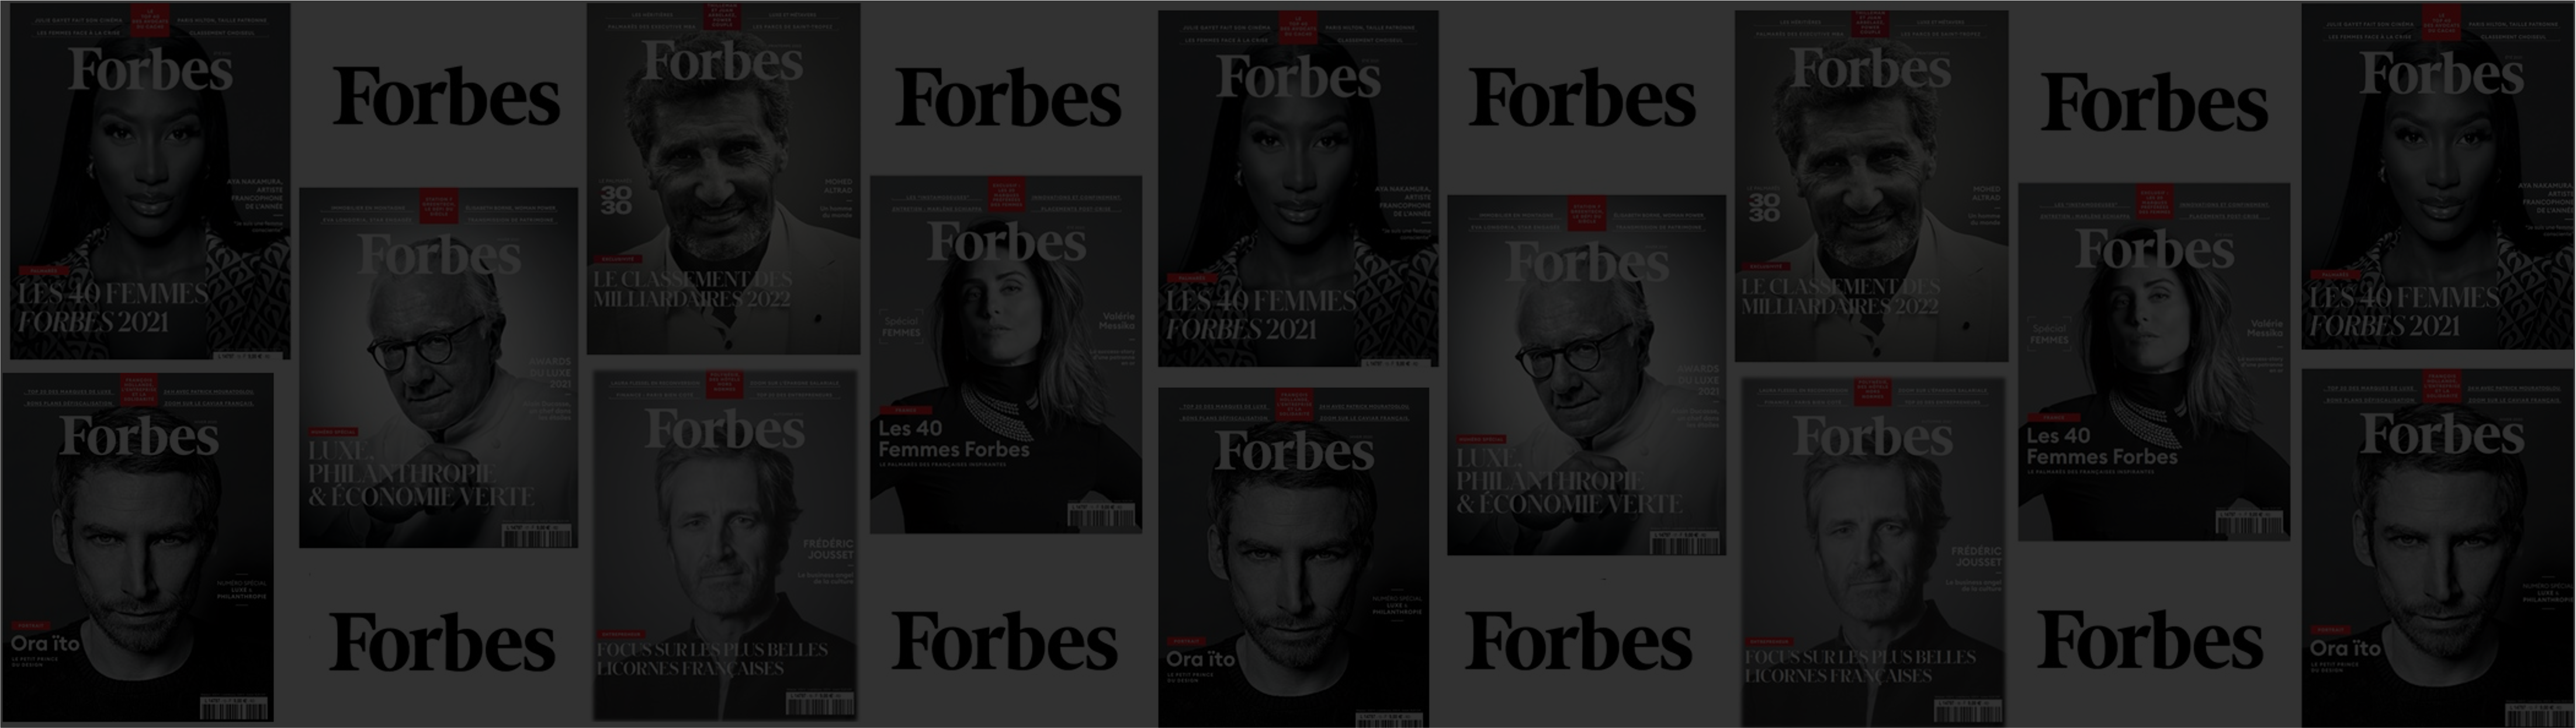 Forbes #brandvoice : nous proposons une exploitation propre du levier autour du conseil